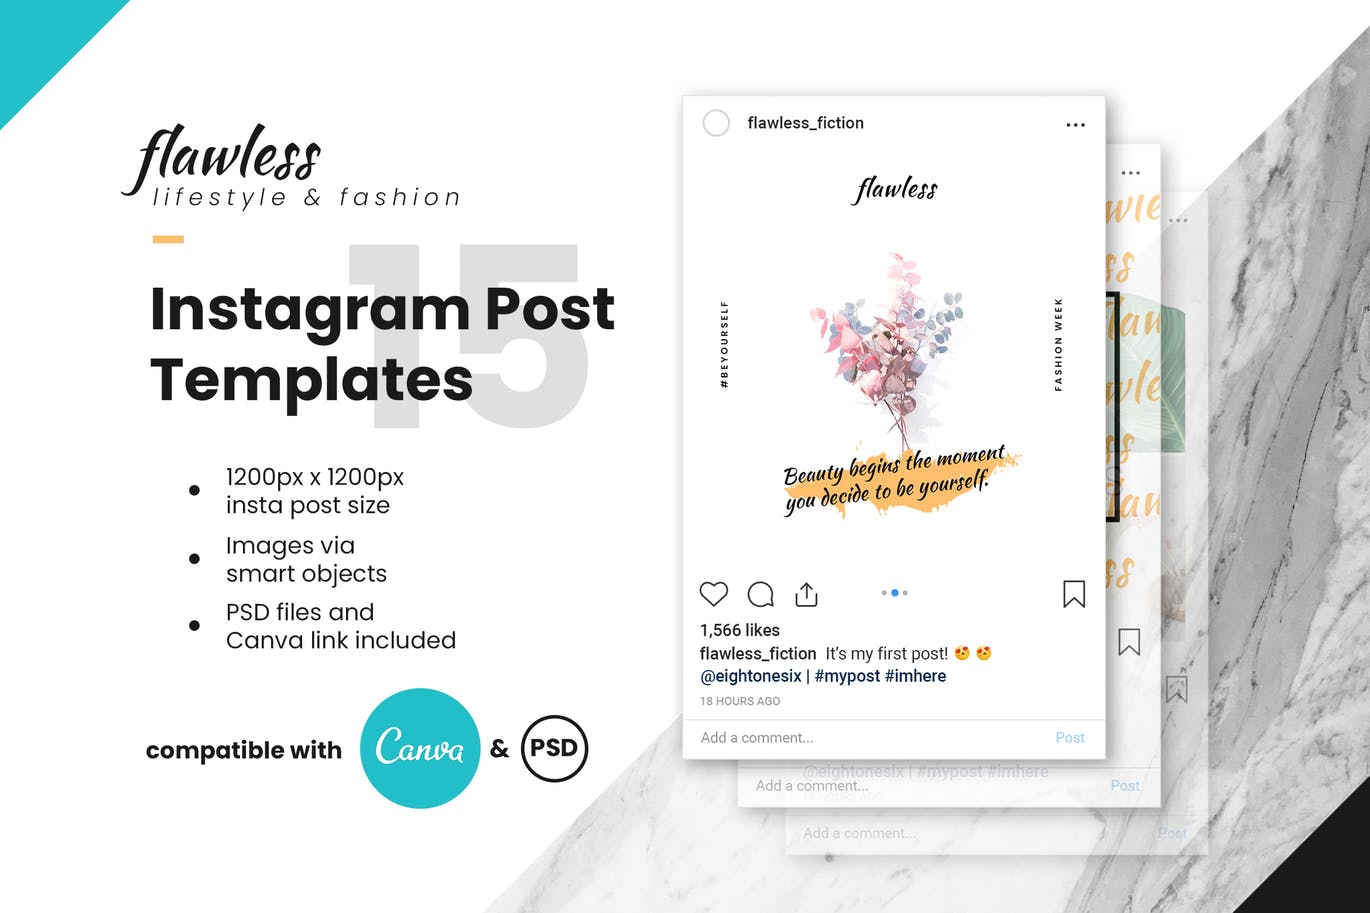 优雅时尚设计风格Instagram品牌故事设计模板第一素材精选 Flawless Instagram Post Template插图